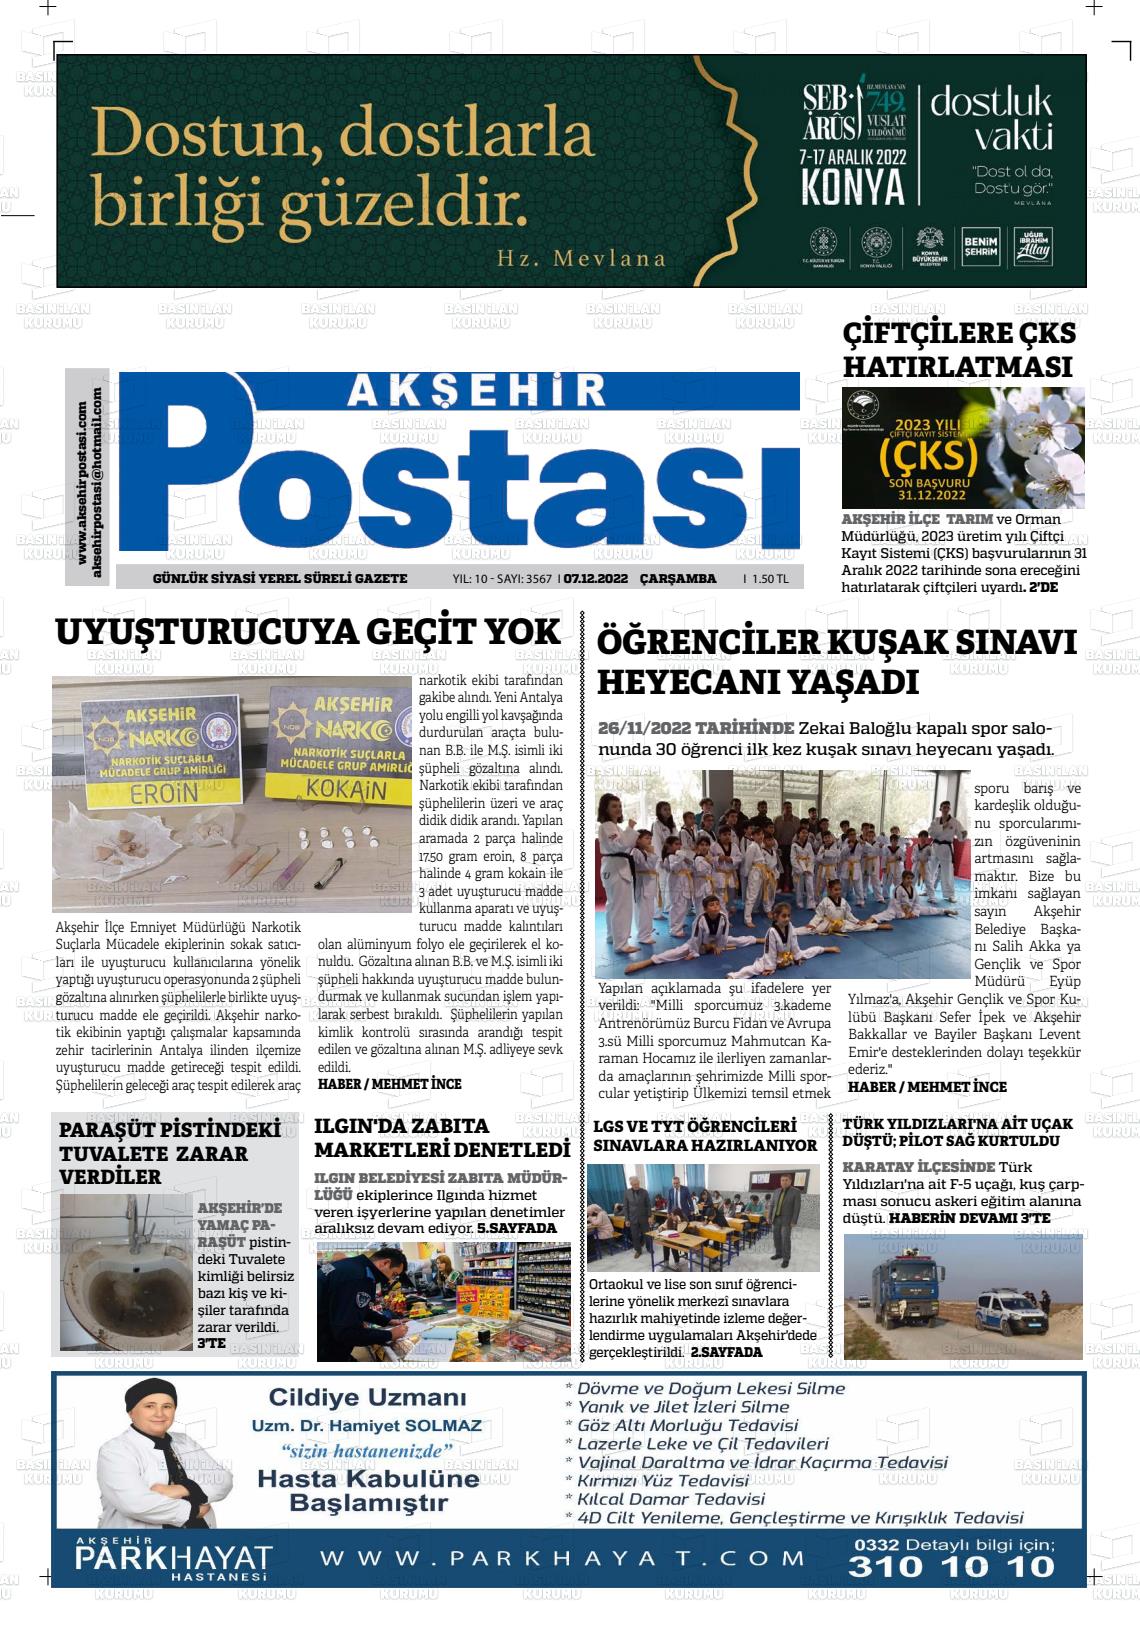 07 Aralık 2022 Akşehir Postasi Gazete Manşeti